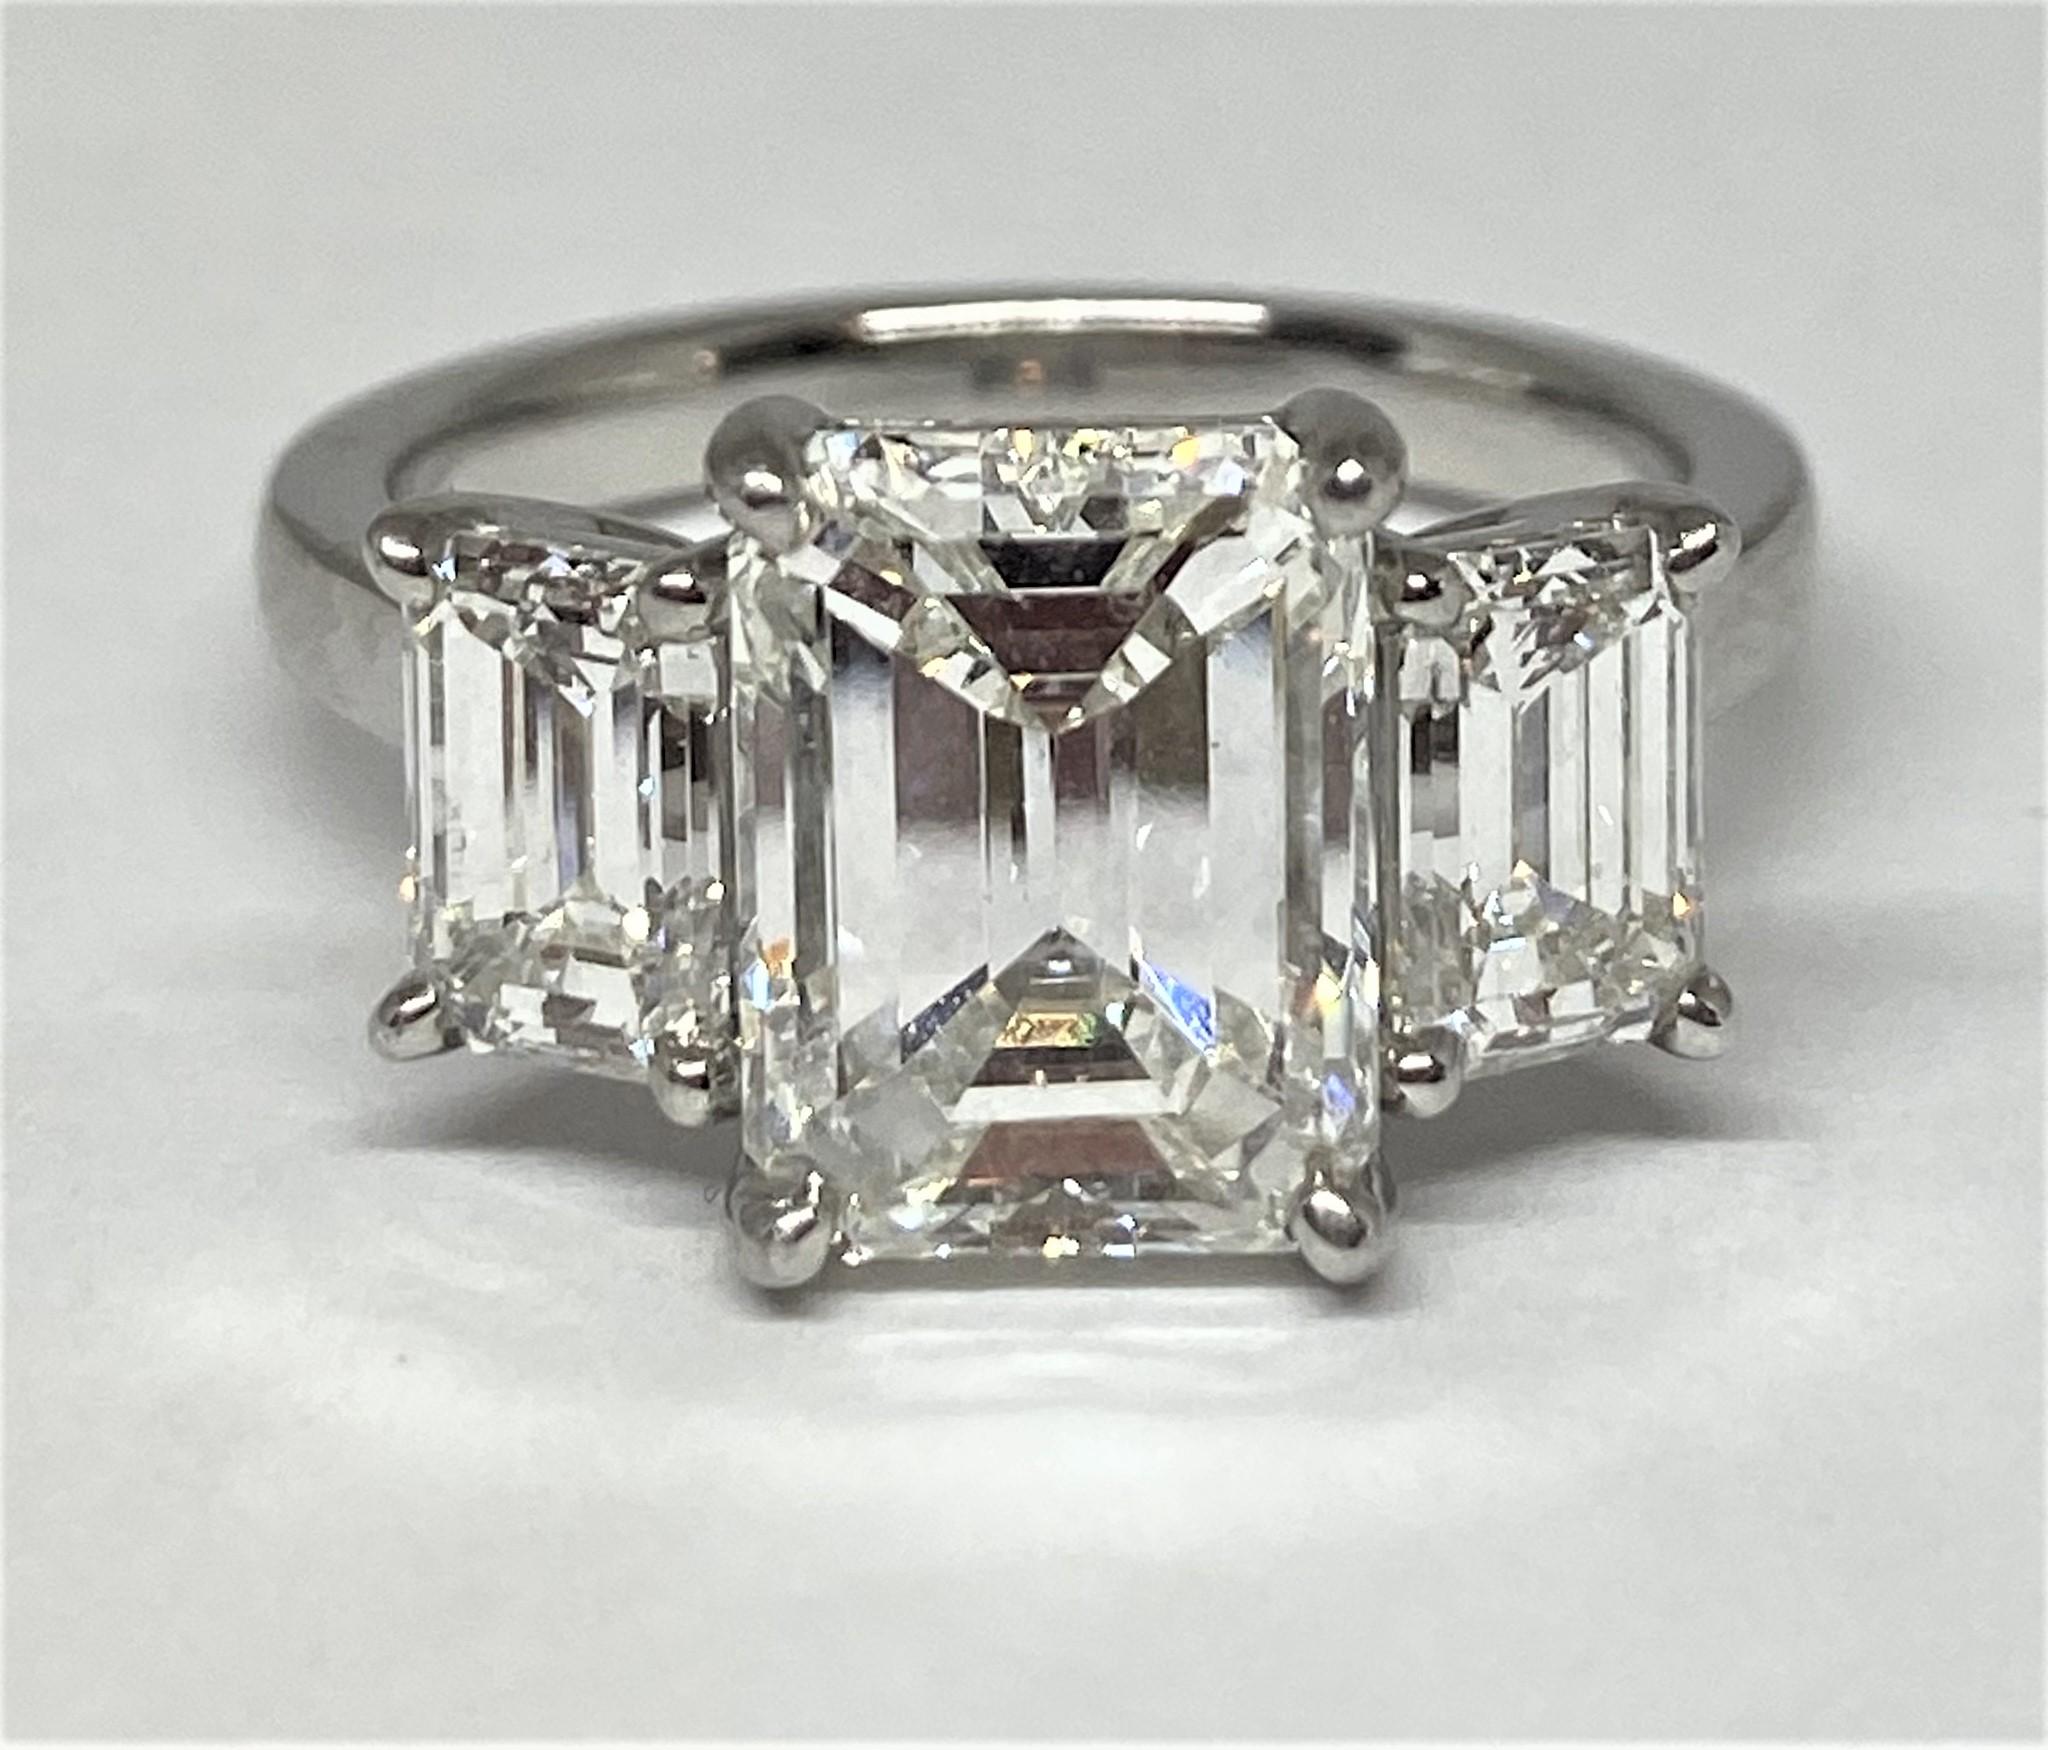 2.4 carat emerald cut diamond